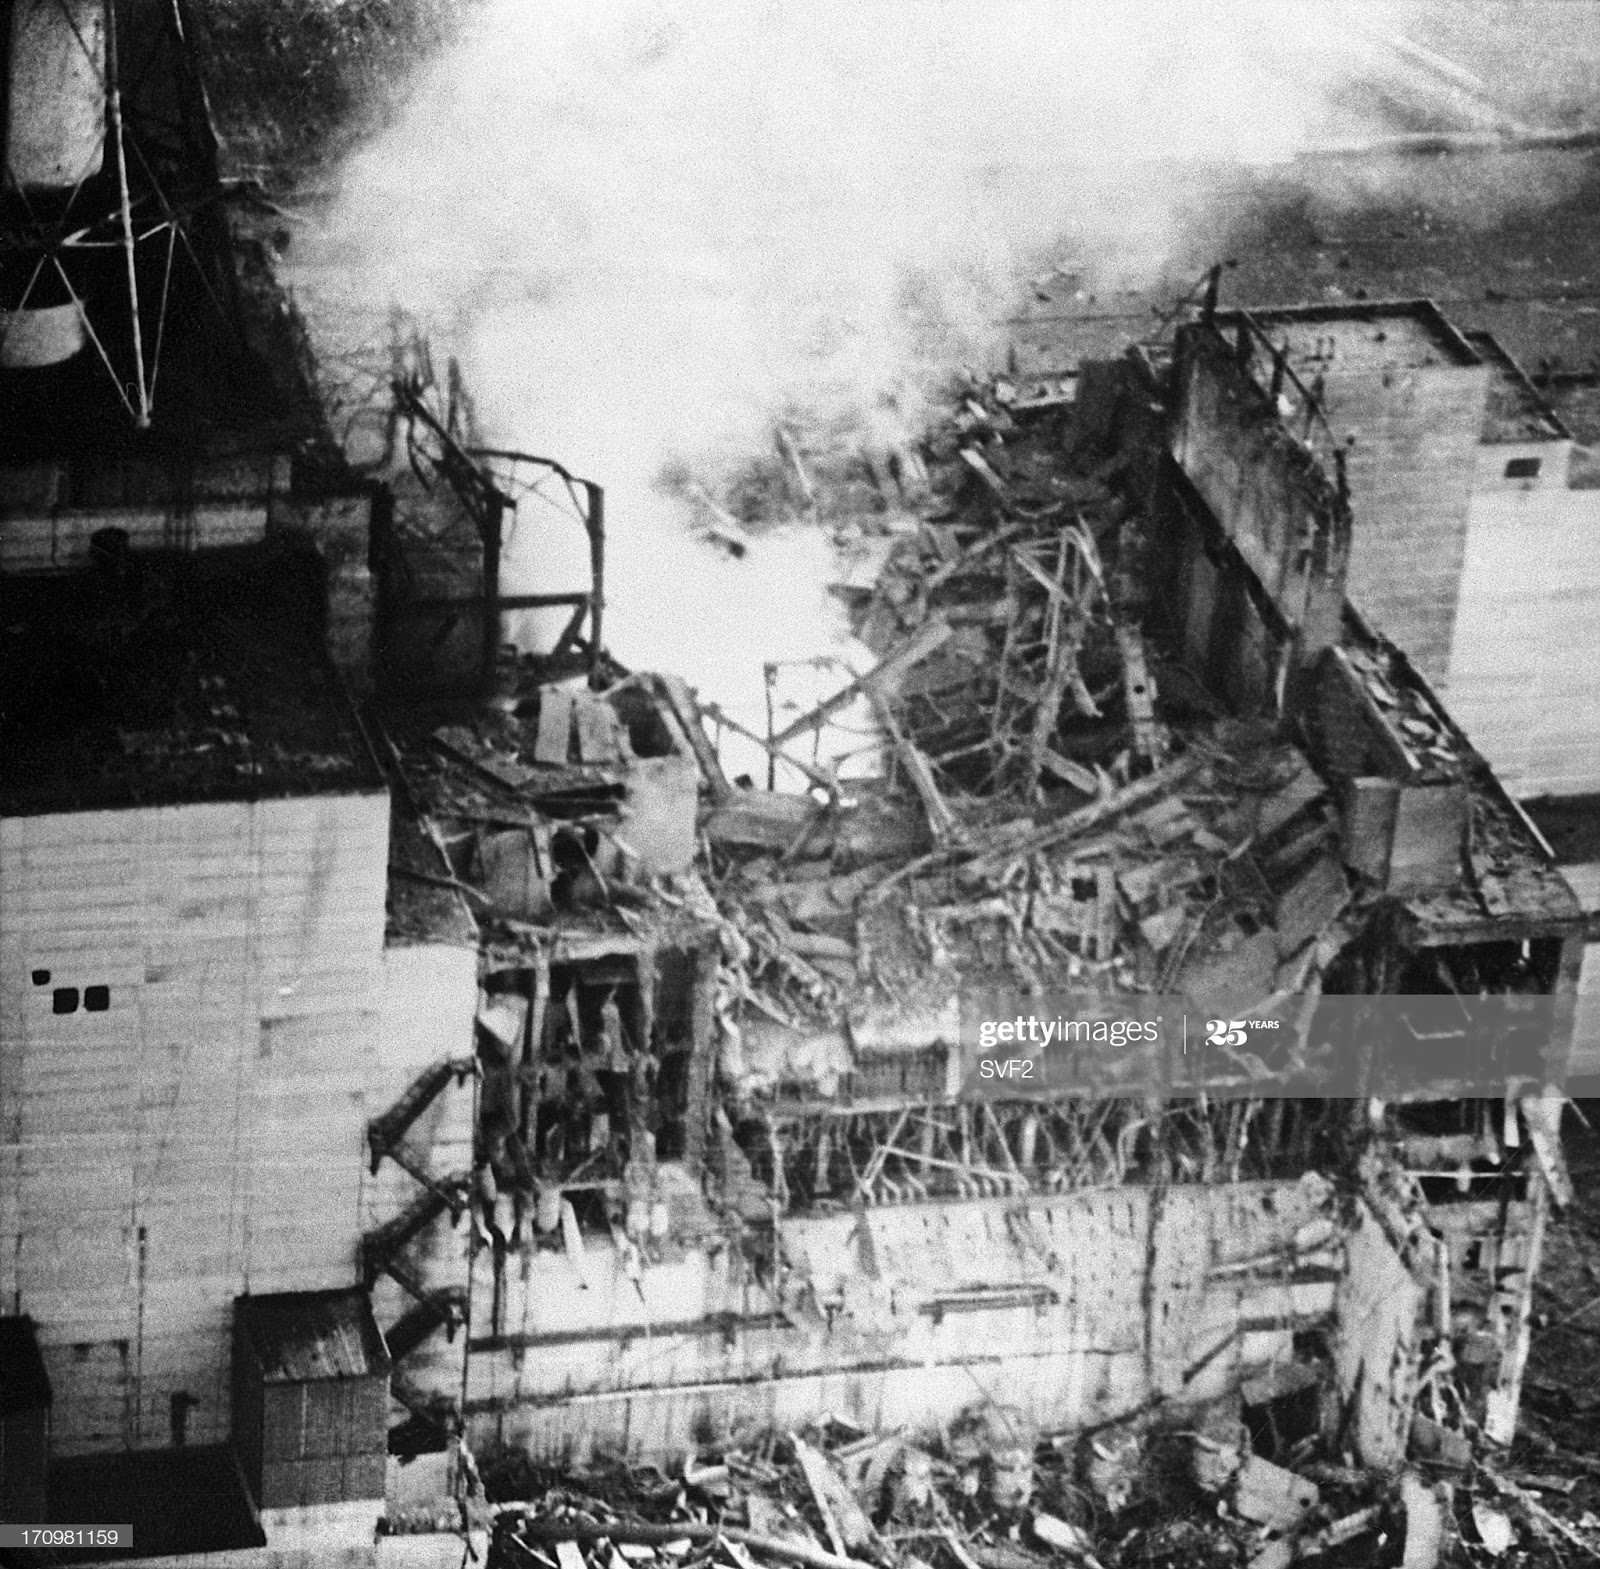 В каком году случилась чернобыльская катастрофа. Авария на Чернобыльской АЭС 1986. 4 Энергоблок ЧАЭС 1986. ЧАЭС реактор 1986. Чернобыльская АЭС катастрофа 26 апреля 1986.